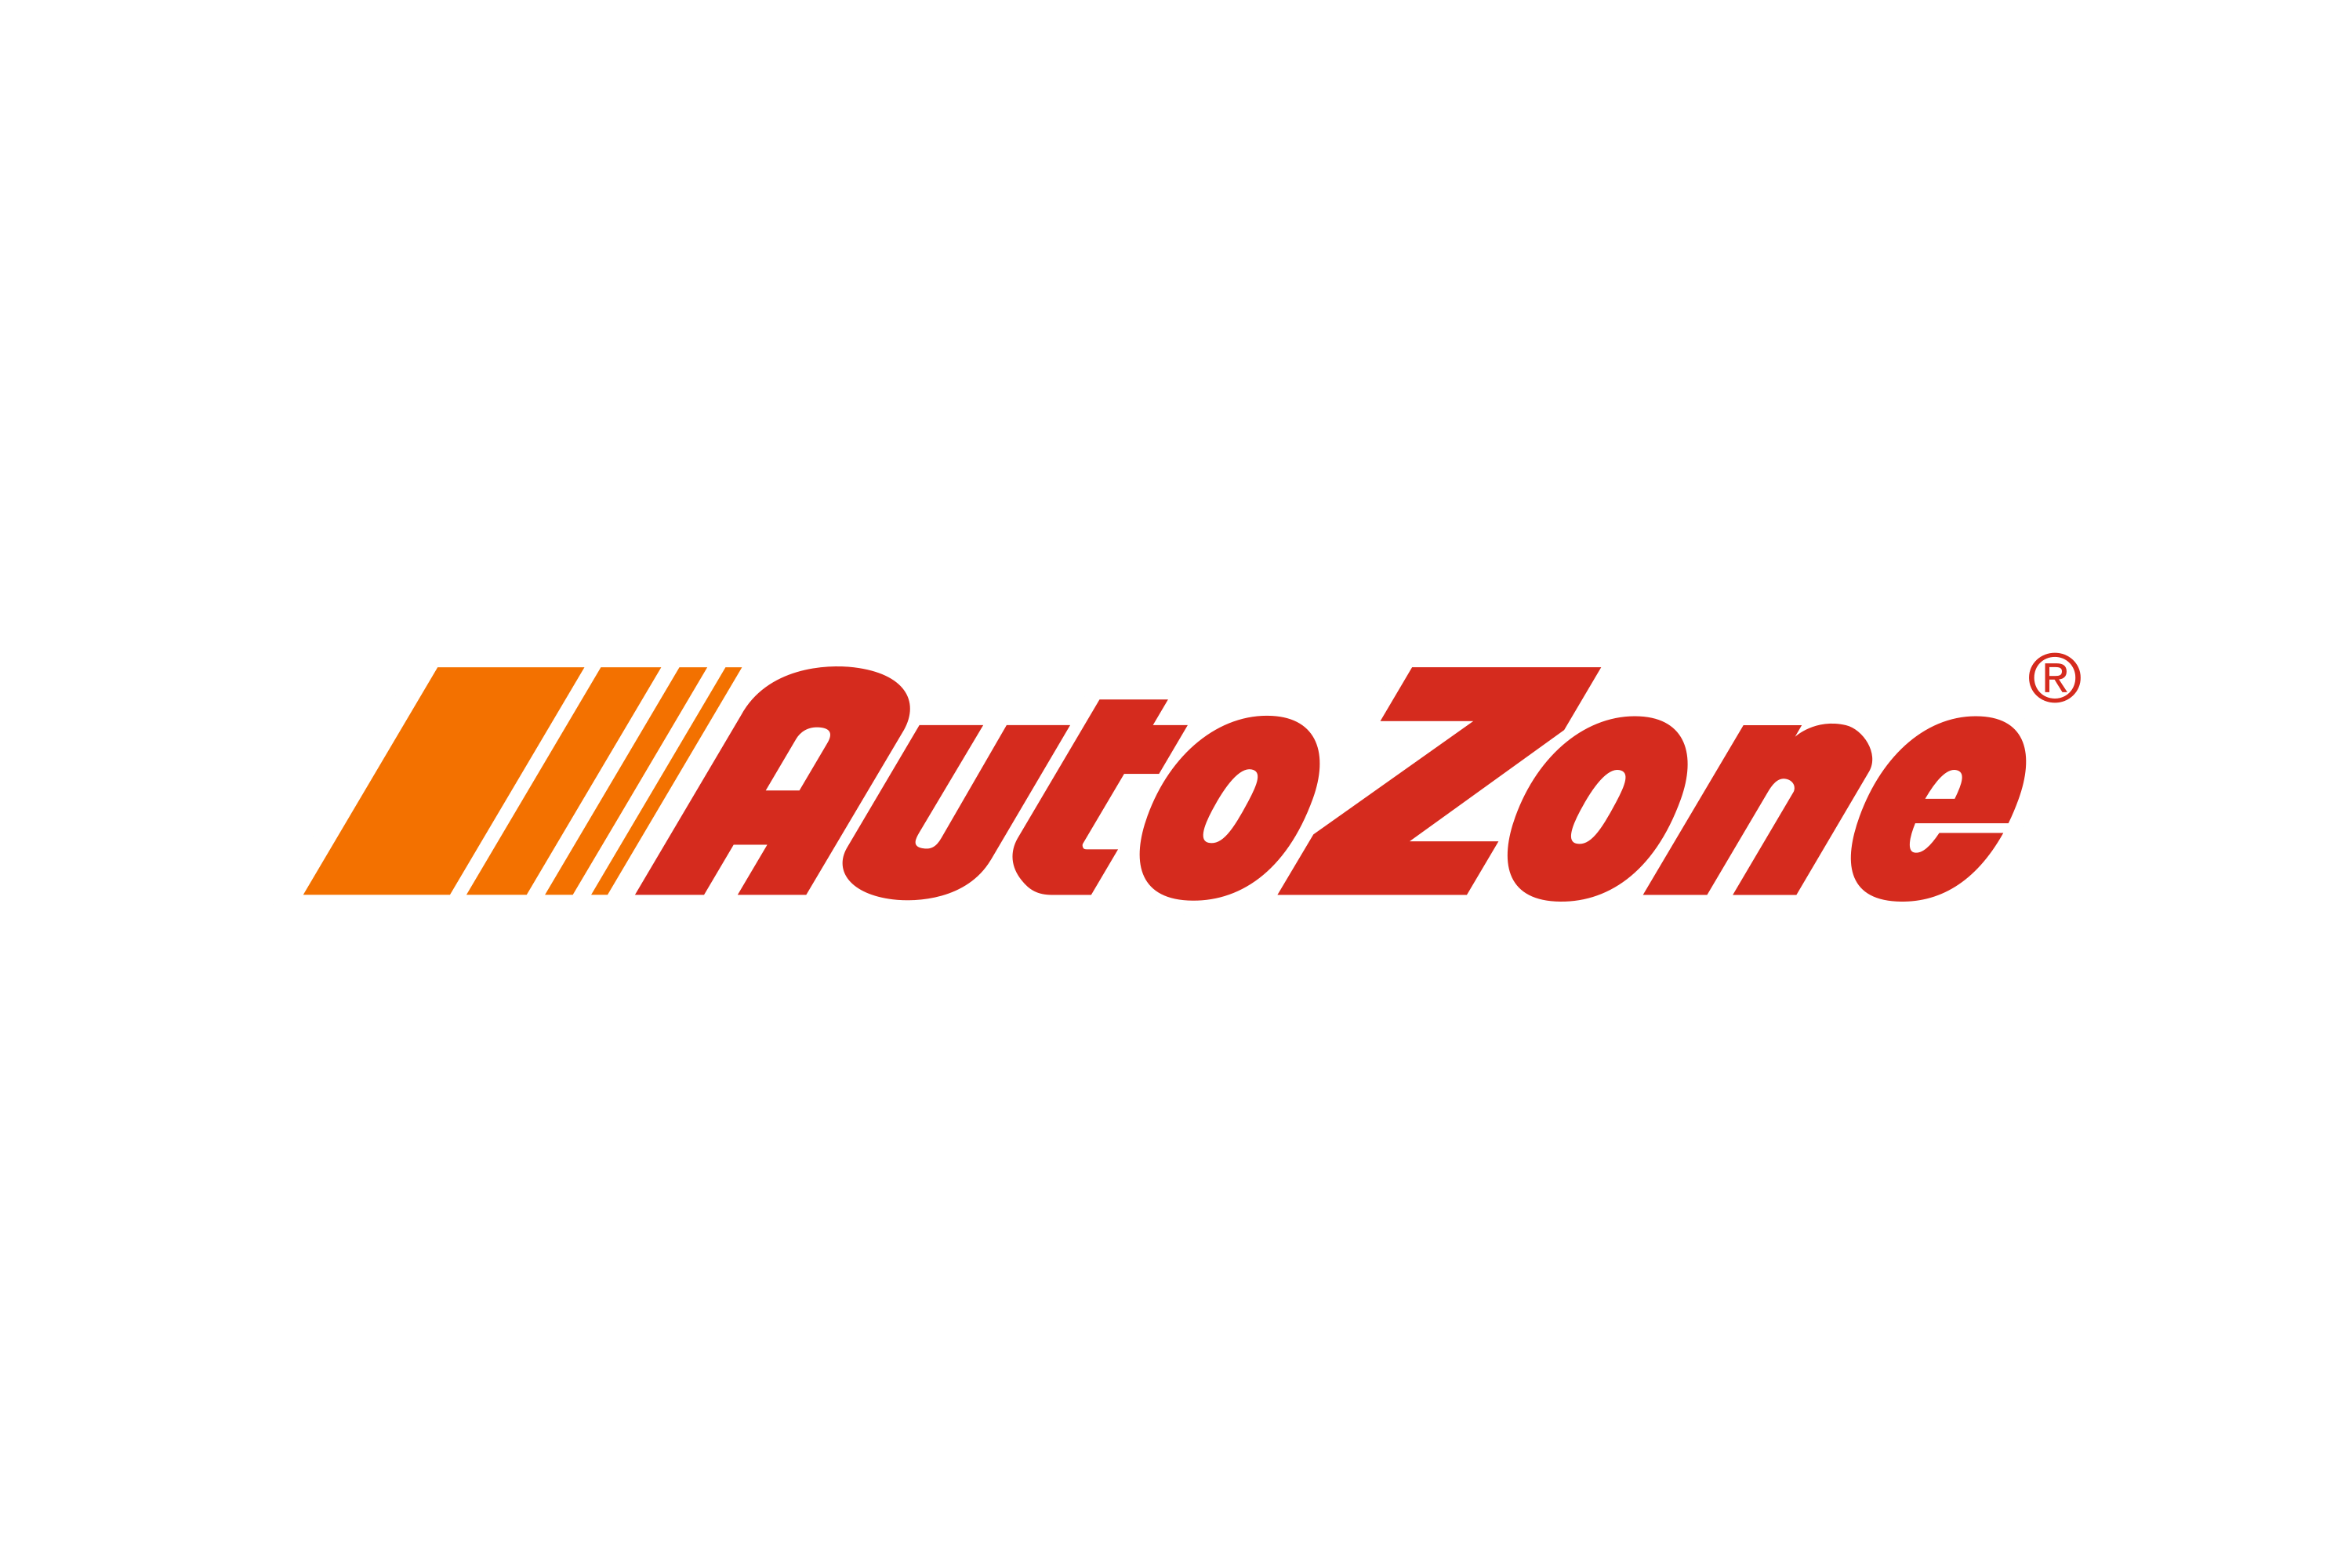 AutoZone